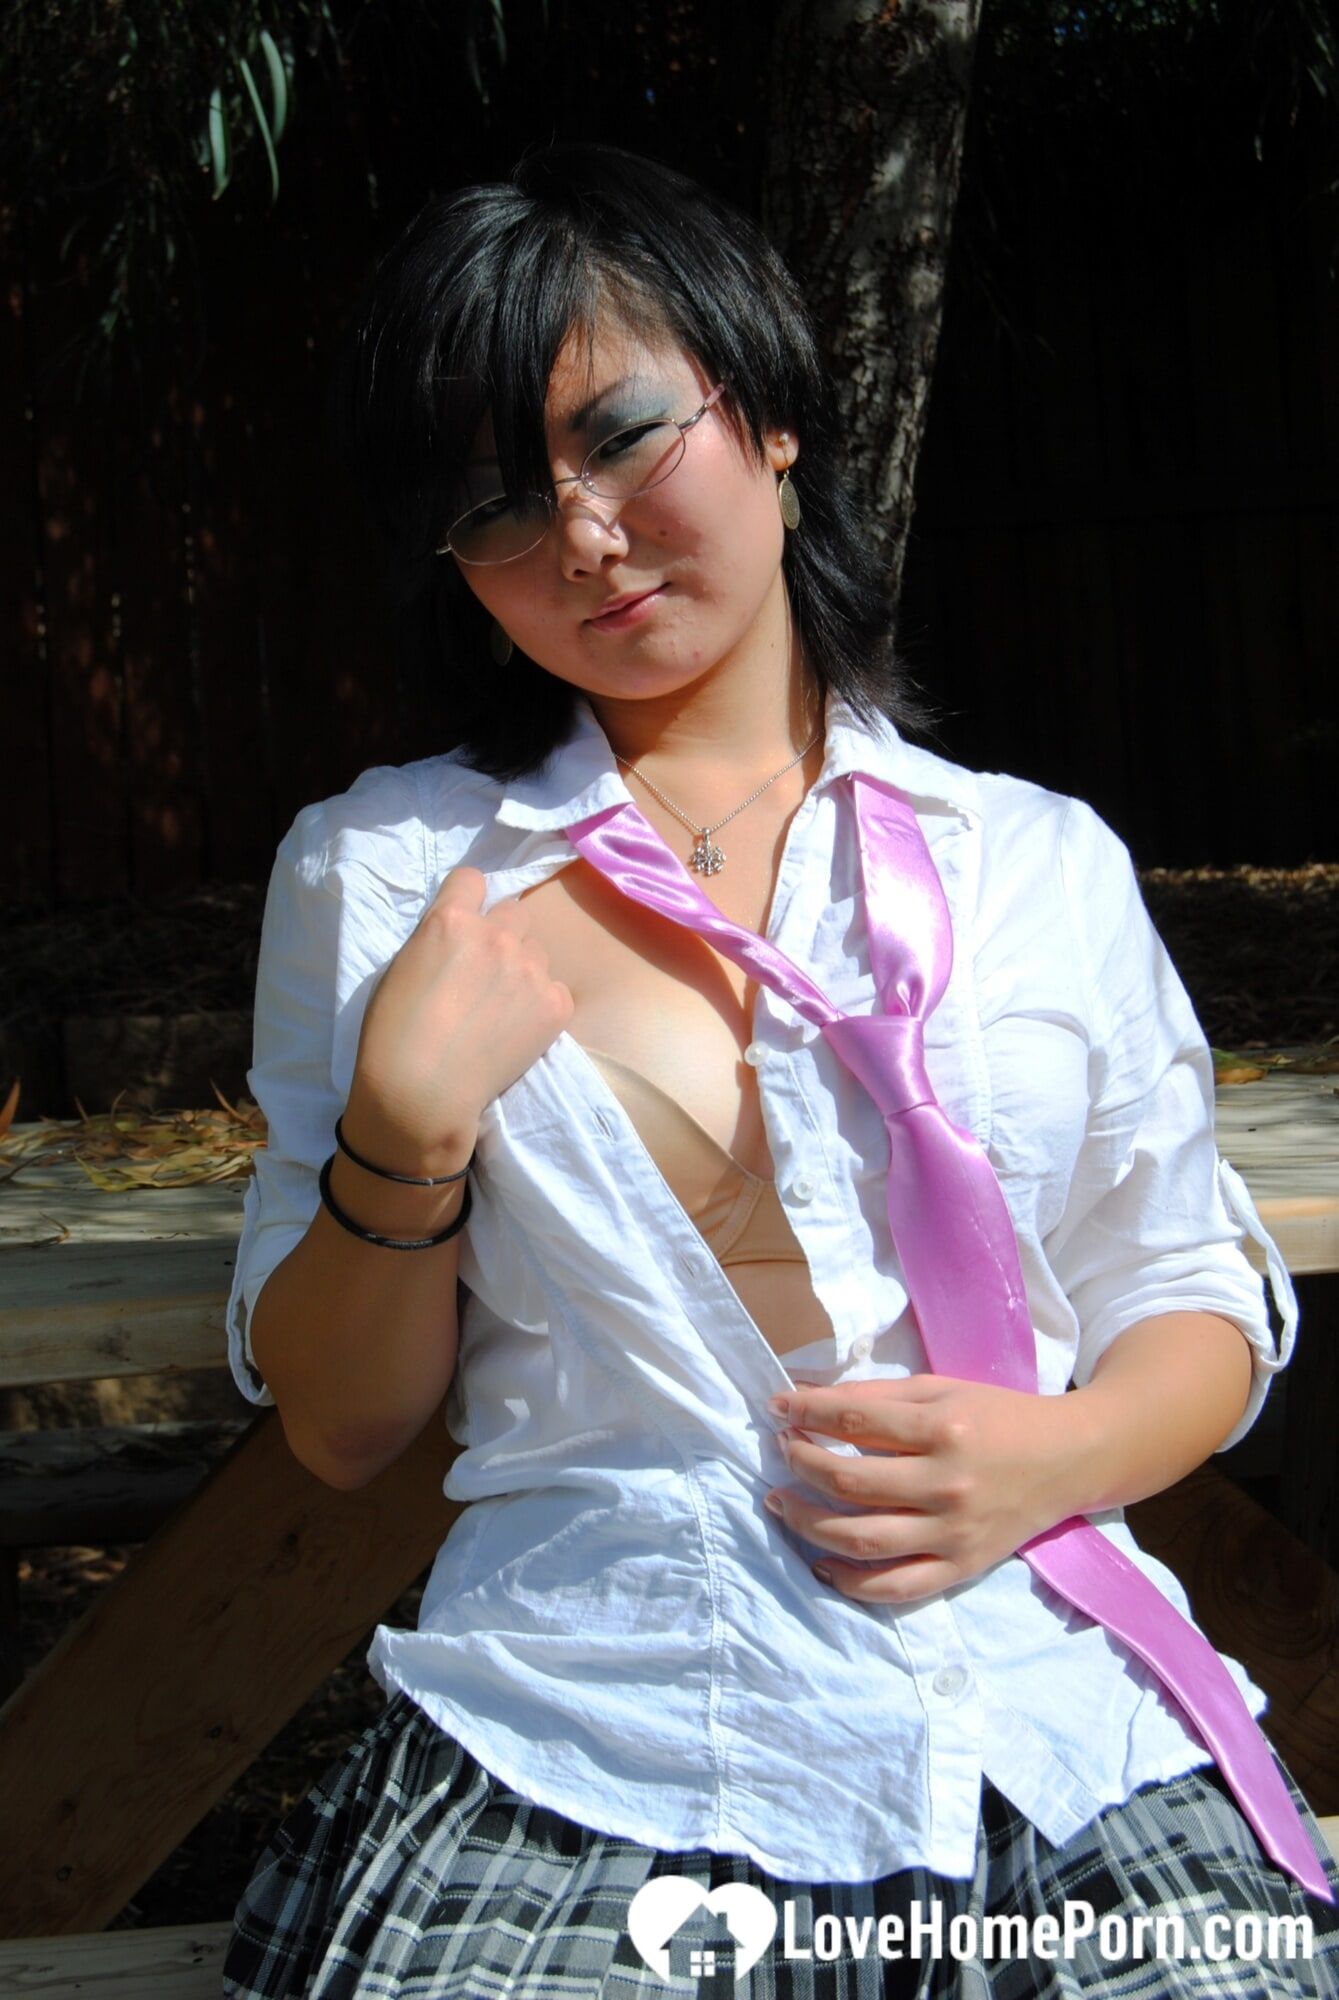 Asian schoolgirl does some hot outdoor teasing #14